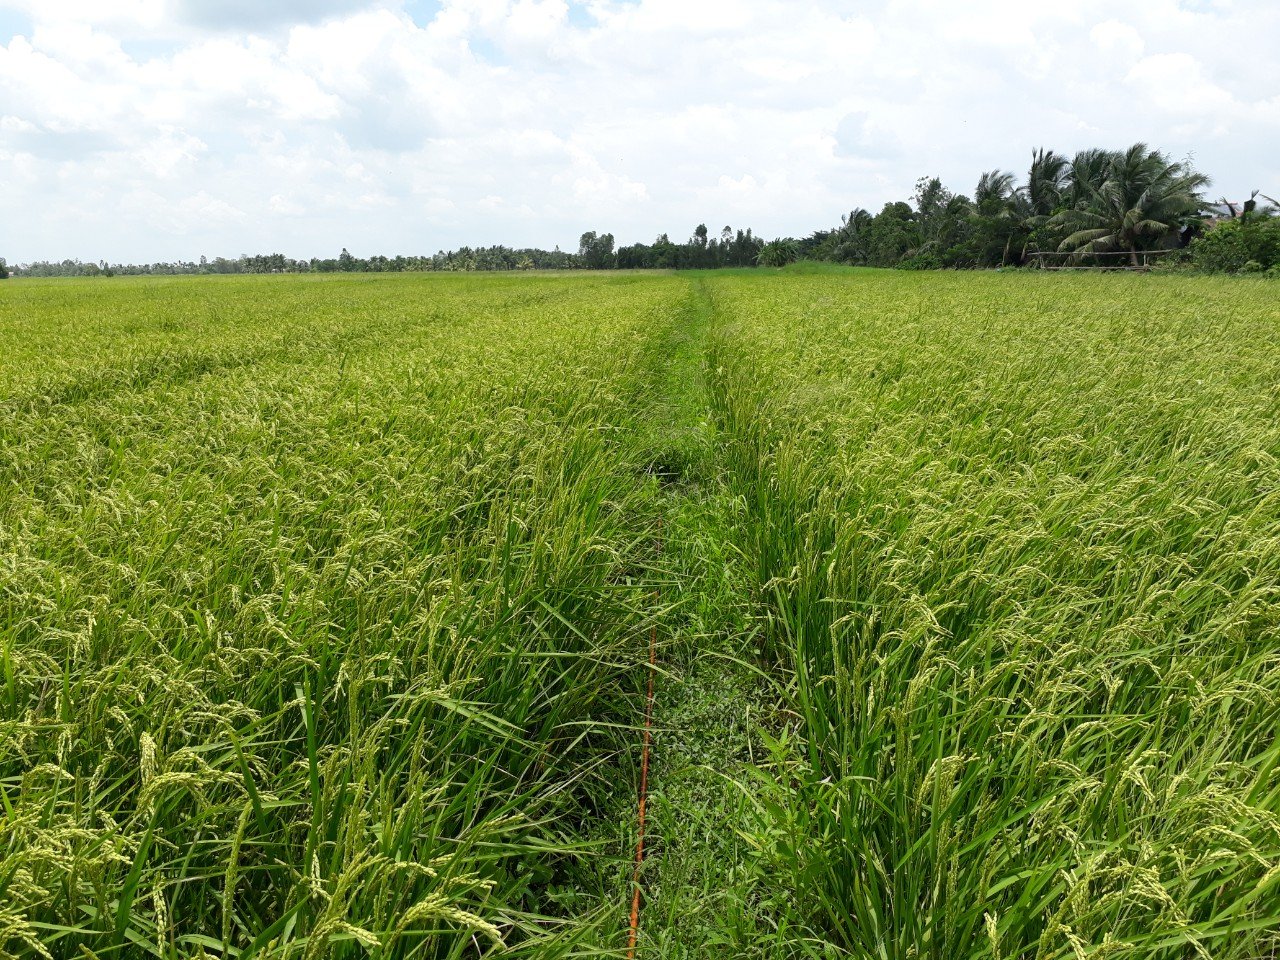 Dự án Ước tính phát thải khí nhà kính trên hiện trạng canh tác lúa hữu cơ, trường hợp nghiên cứu tại huyện Vũng Liêm, tỉnh Sóc Trăng